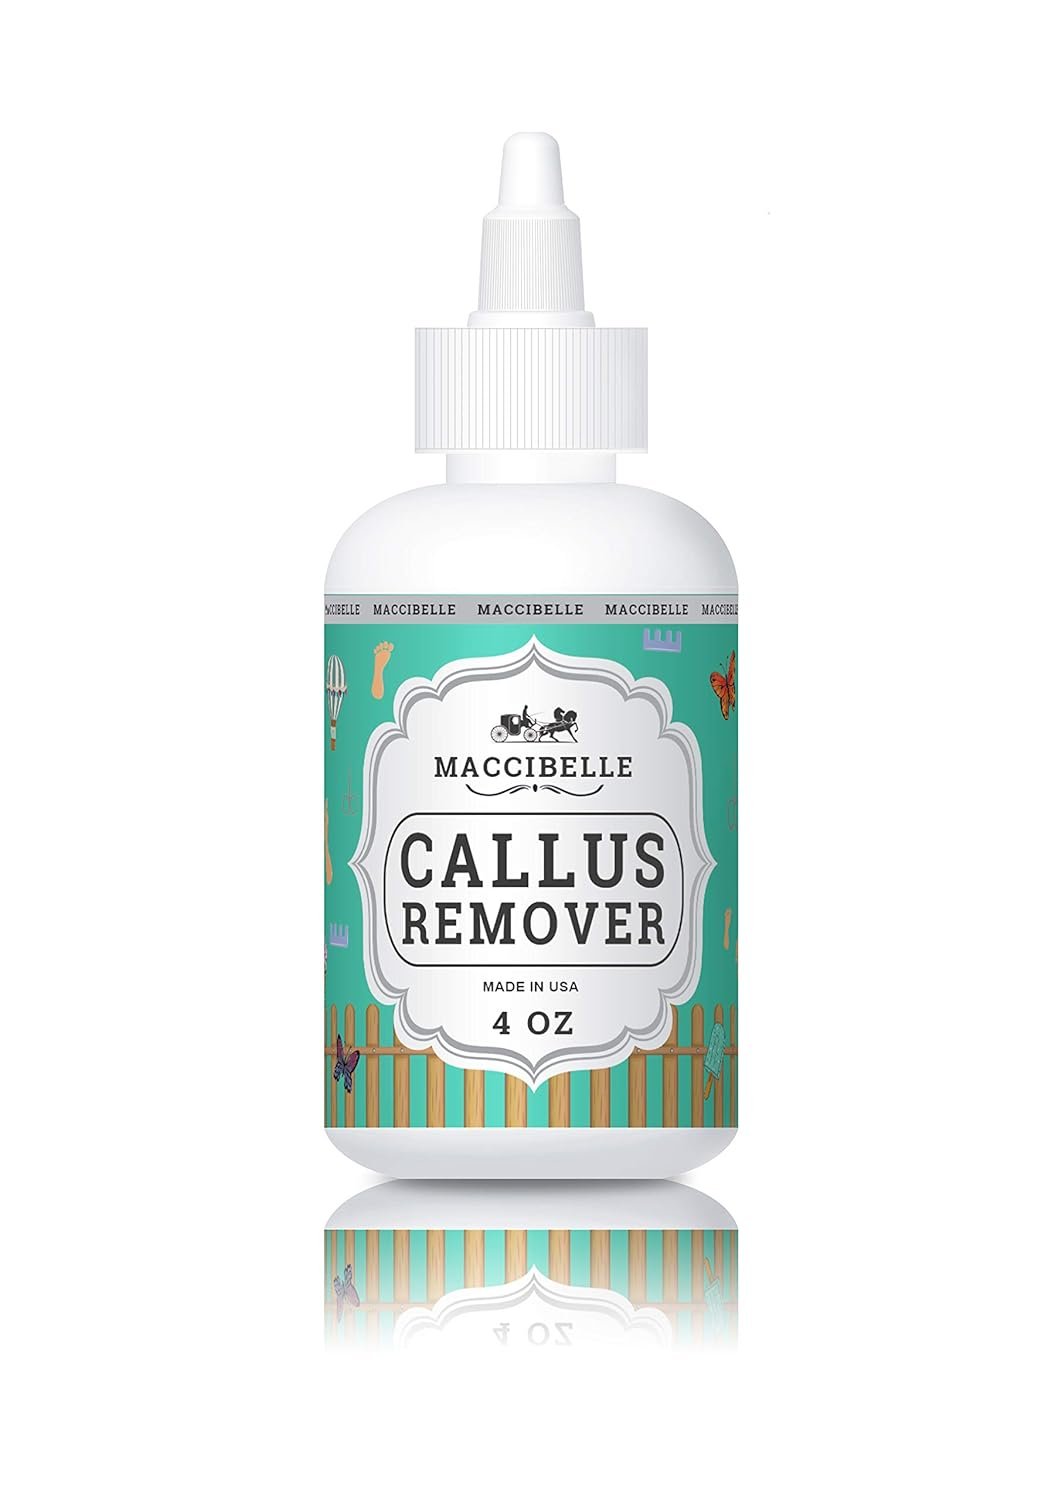 Maccibelle Callus Remover Extra Strength Callus Eliminator for Feet, Professional Callus and Corn Eliminator Gel 4 oz (Pack of Callus + Pumice)